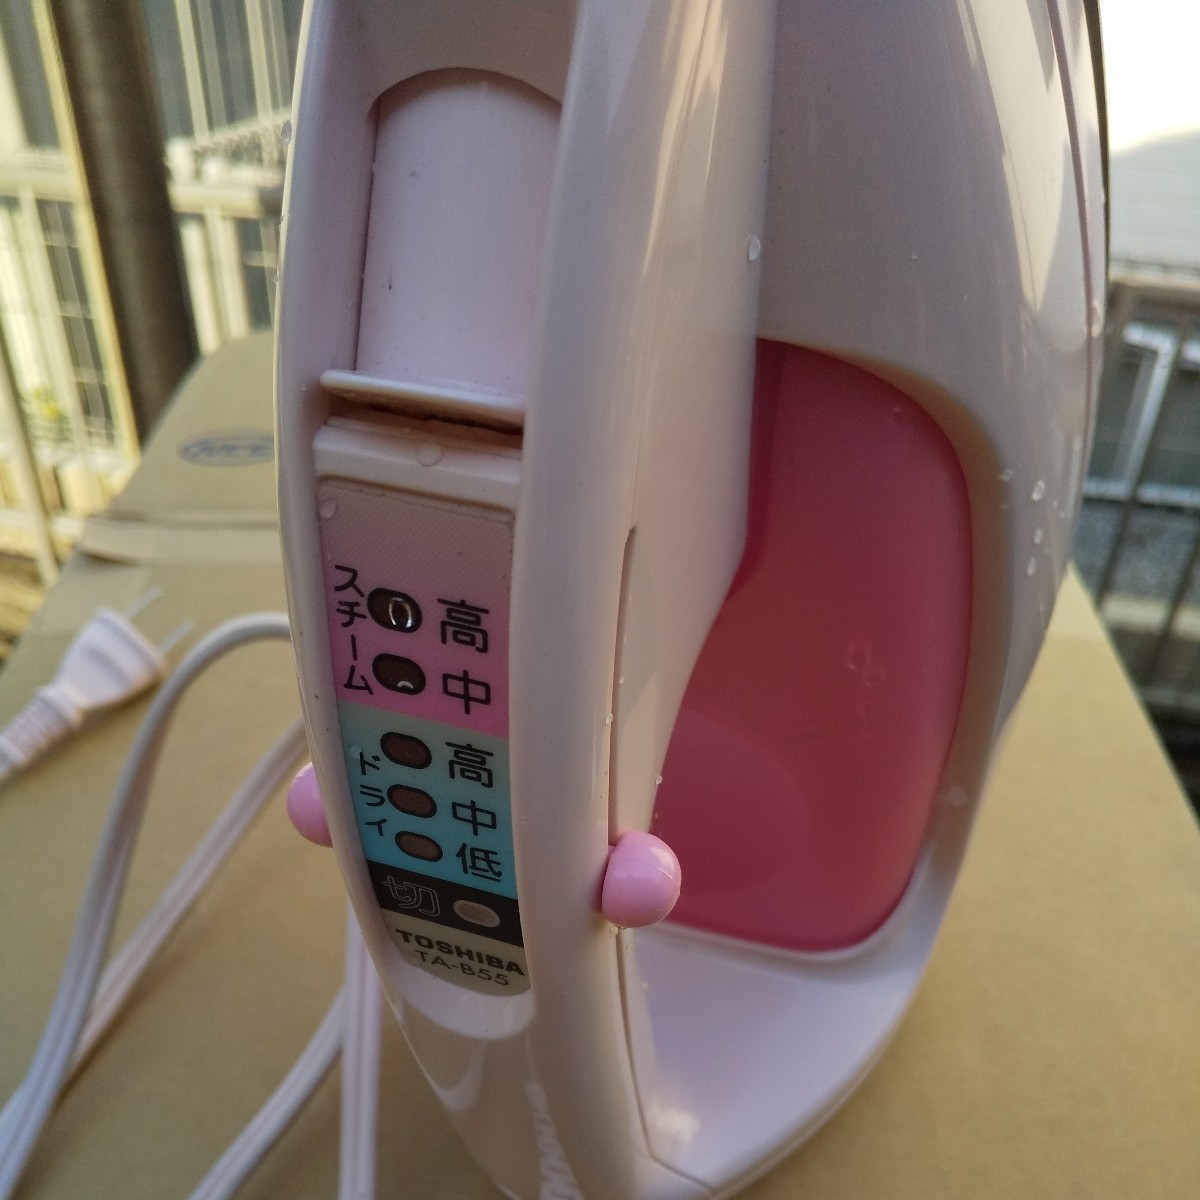 TOSHIBA 東芝 ta-b55 ピンク 熱くなりました アイロン スチームアイロン ゆうパック60_画像4